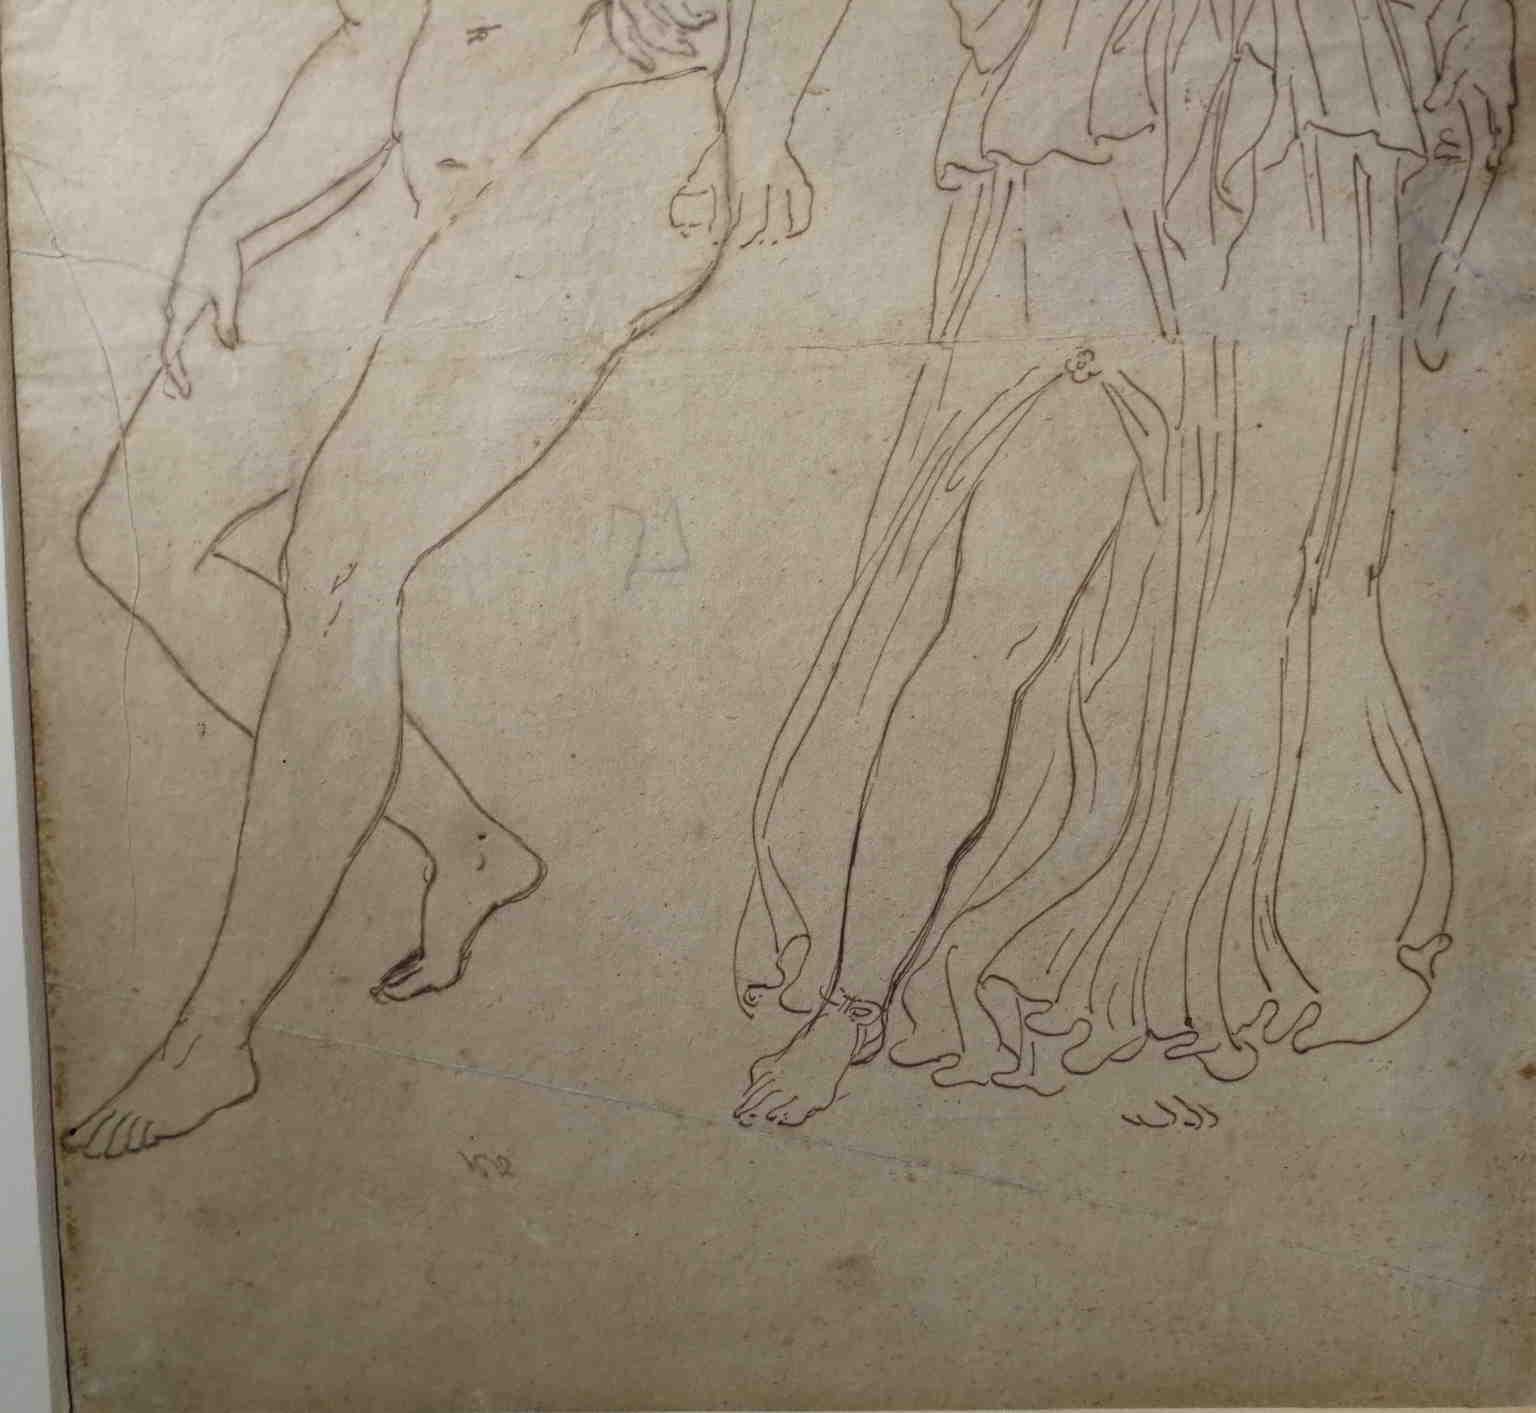 Bei dieser Zeichnung (Bleistift auf Papier, 37,5 x 24 cm) handelt es sich um eine Academia (eine im Akademieunterricht des 19. Jahrhunderts übliche Studie) nach einem antiken Motiv.
Es stellt einen nackten jungen Mann dar, wahrscheinlich einen